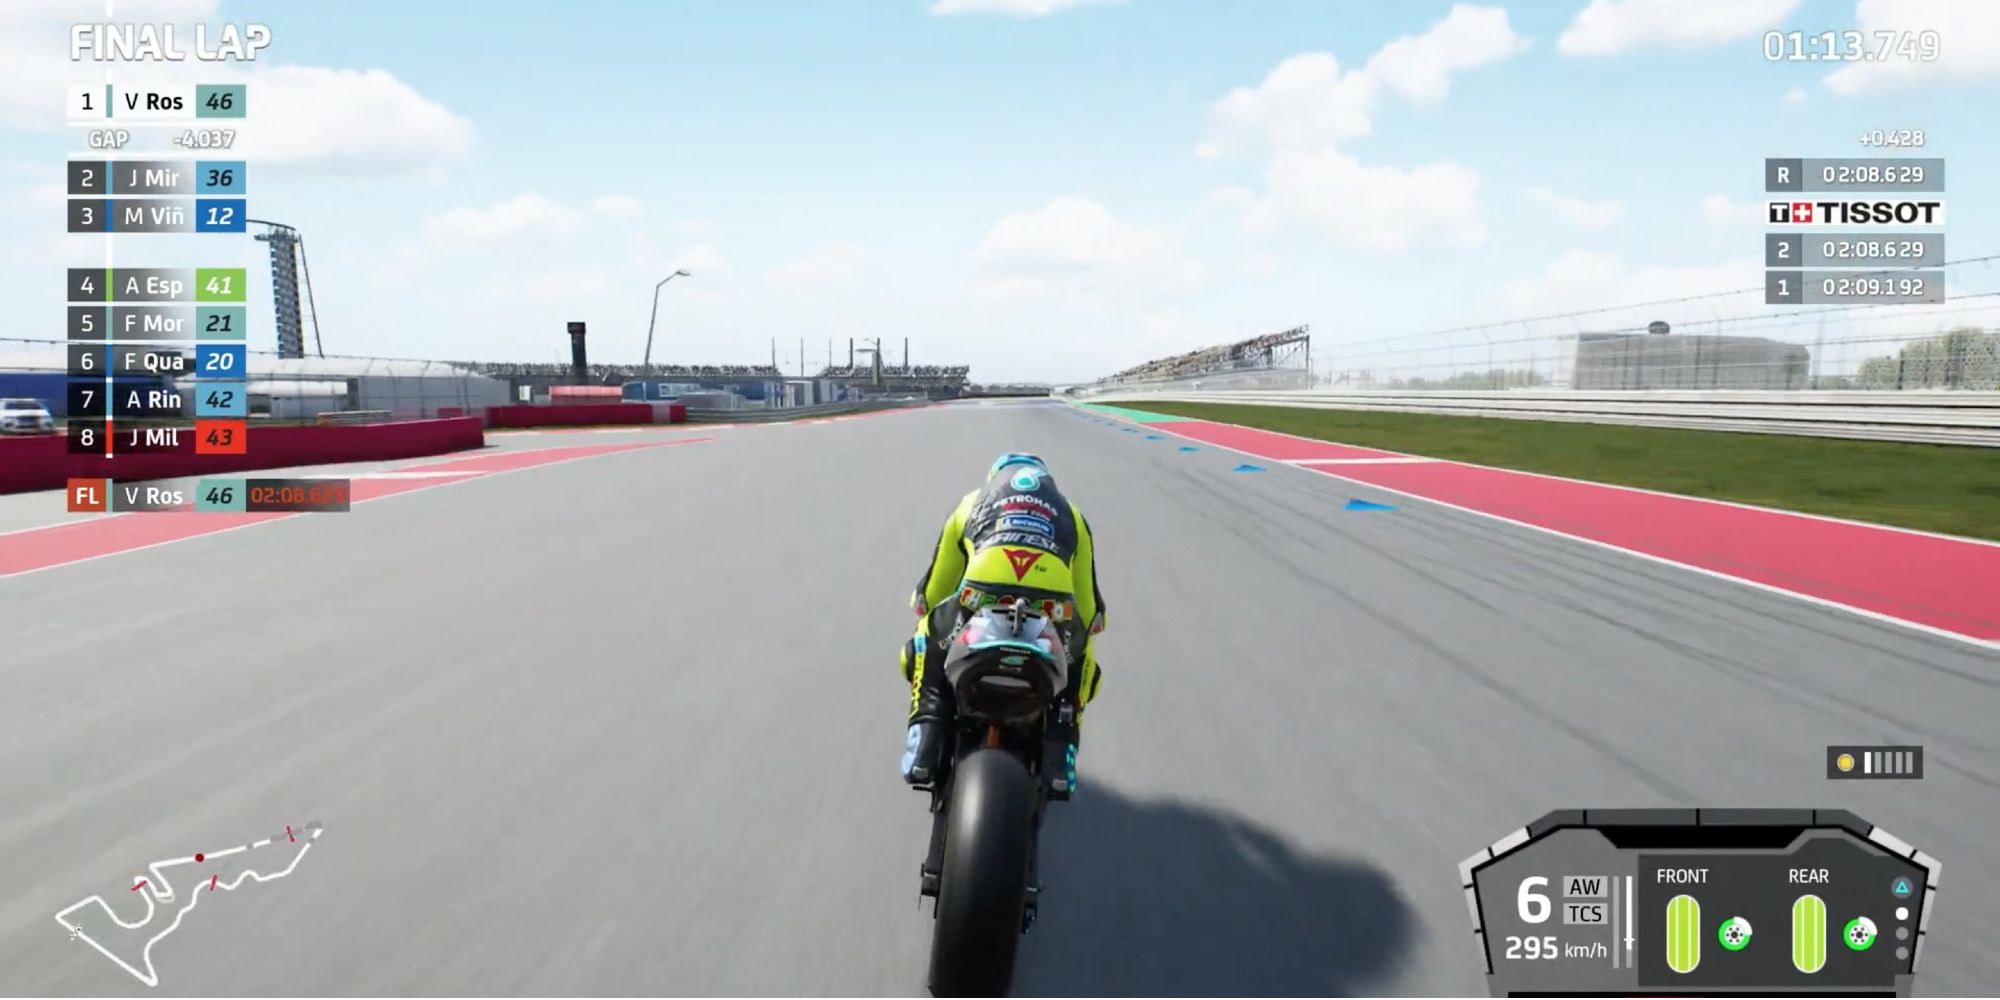 Реалистичные гоночные игры - MotoGP 2021 - Игрок едет на максимальной скорости